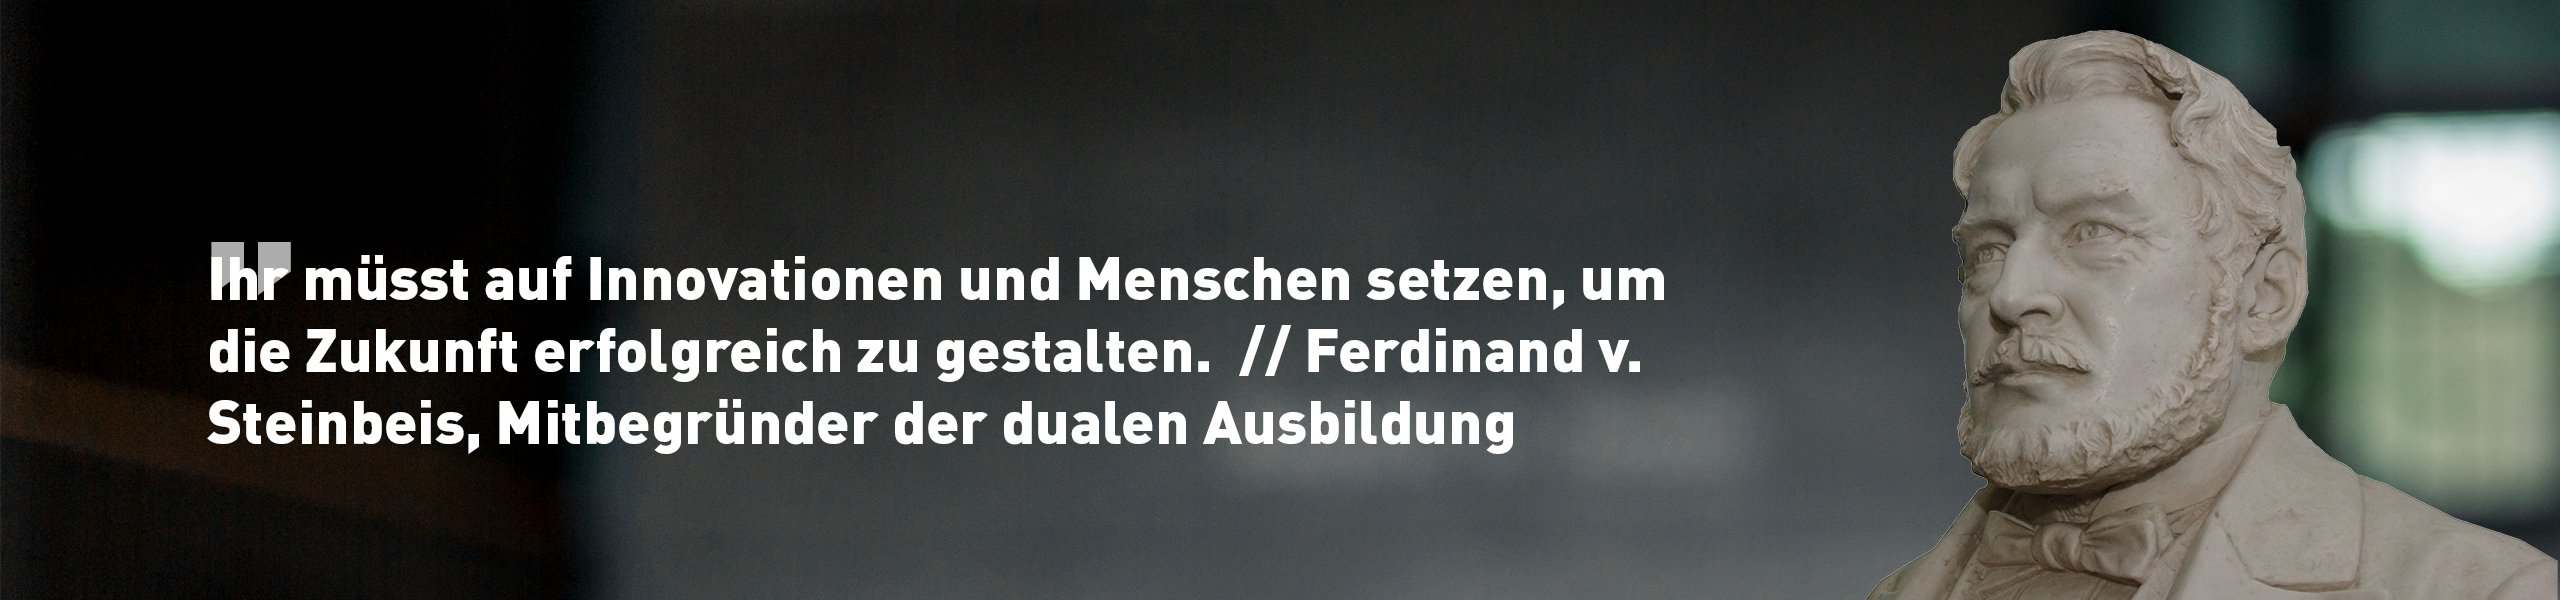 Ferdinand von Steinbeis, duale Ausbildung